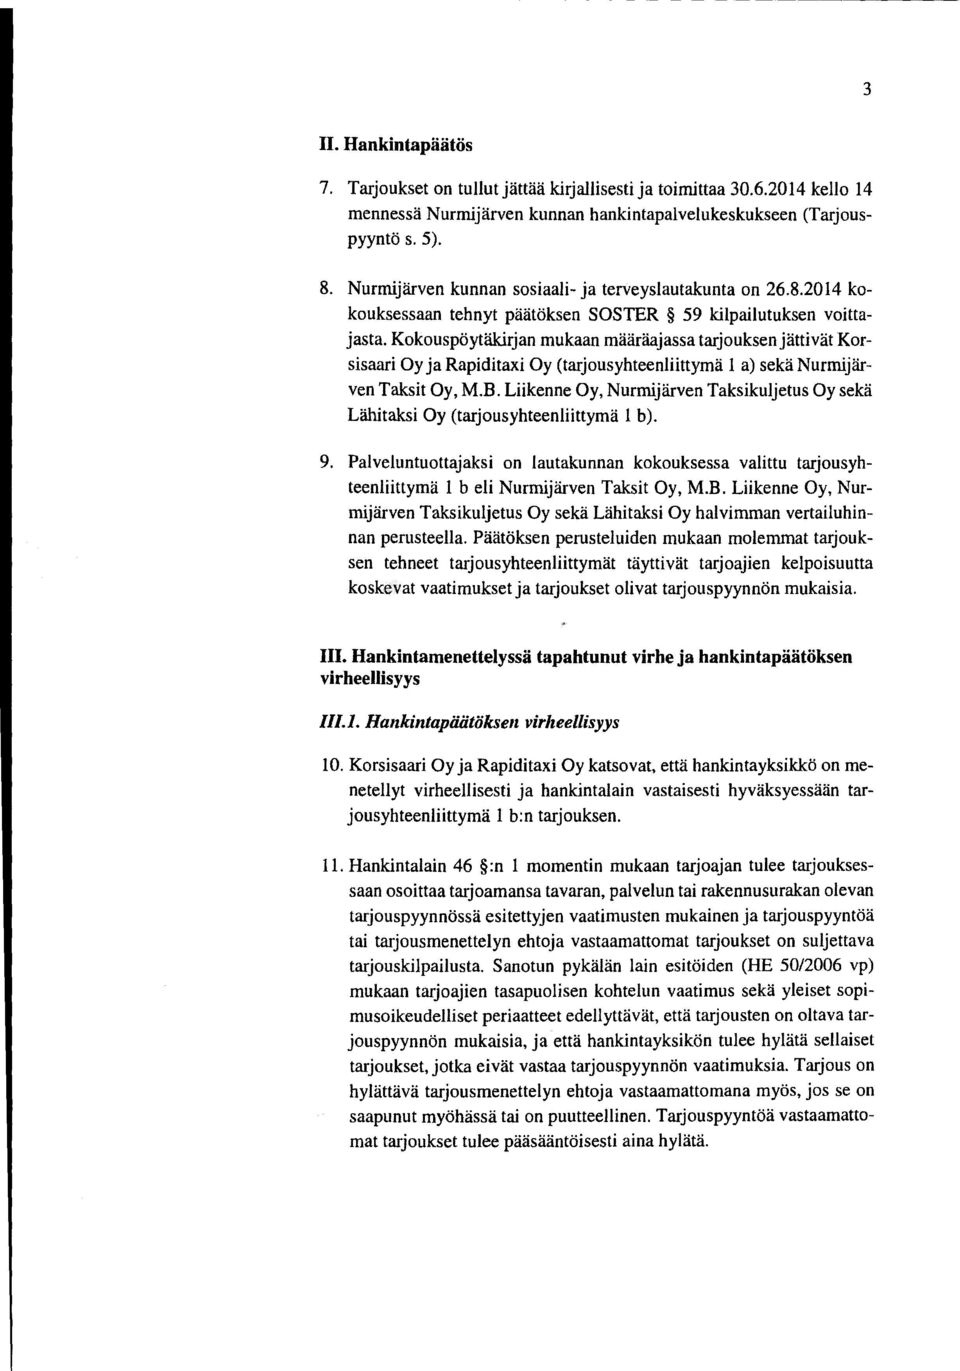 Kokouspöytäkirjan mukaan määräajassa tarjouksen jättivät Korsisaari Oy ja Rapiditaxi Oy (tarjousyhteenliittymä 1 a) sekä Nurmijärven Taksit Oy, M.B.